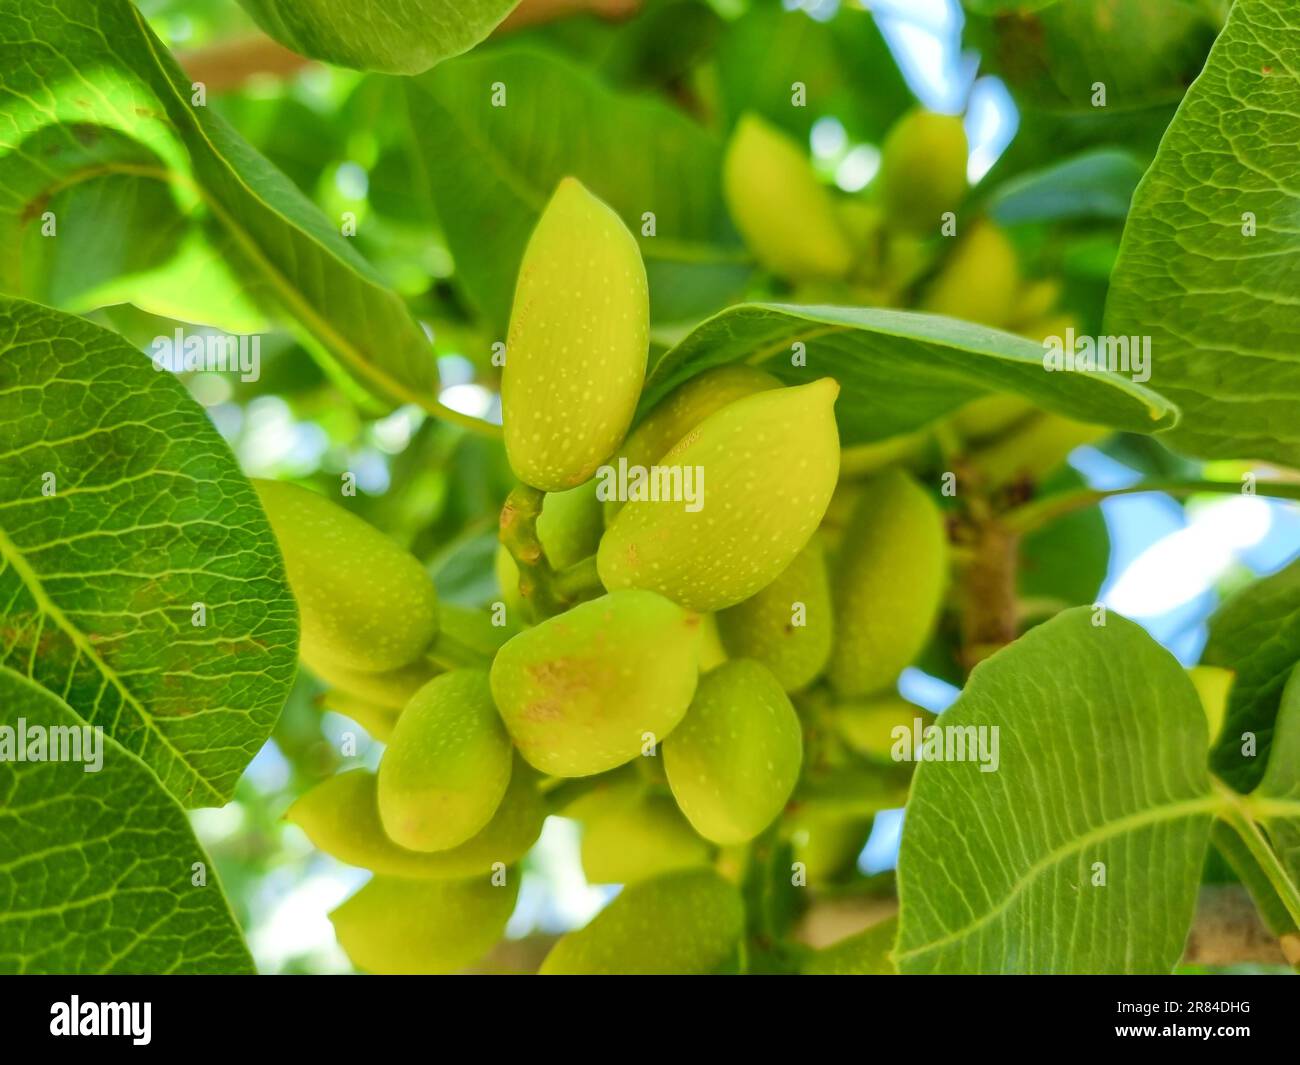 Fruits de pistachios et pistaches vertes fraîches Banque D'Images